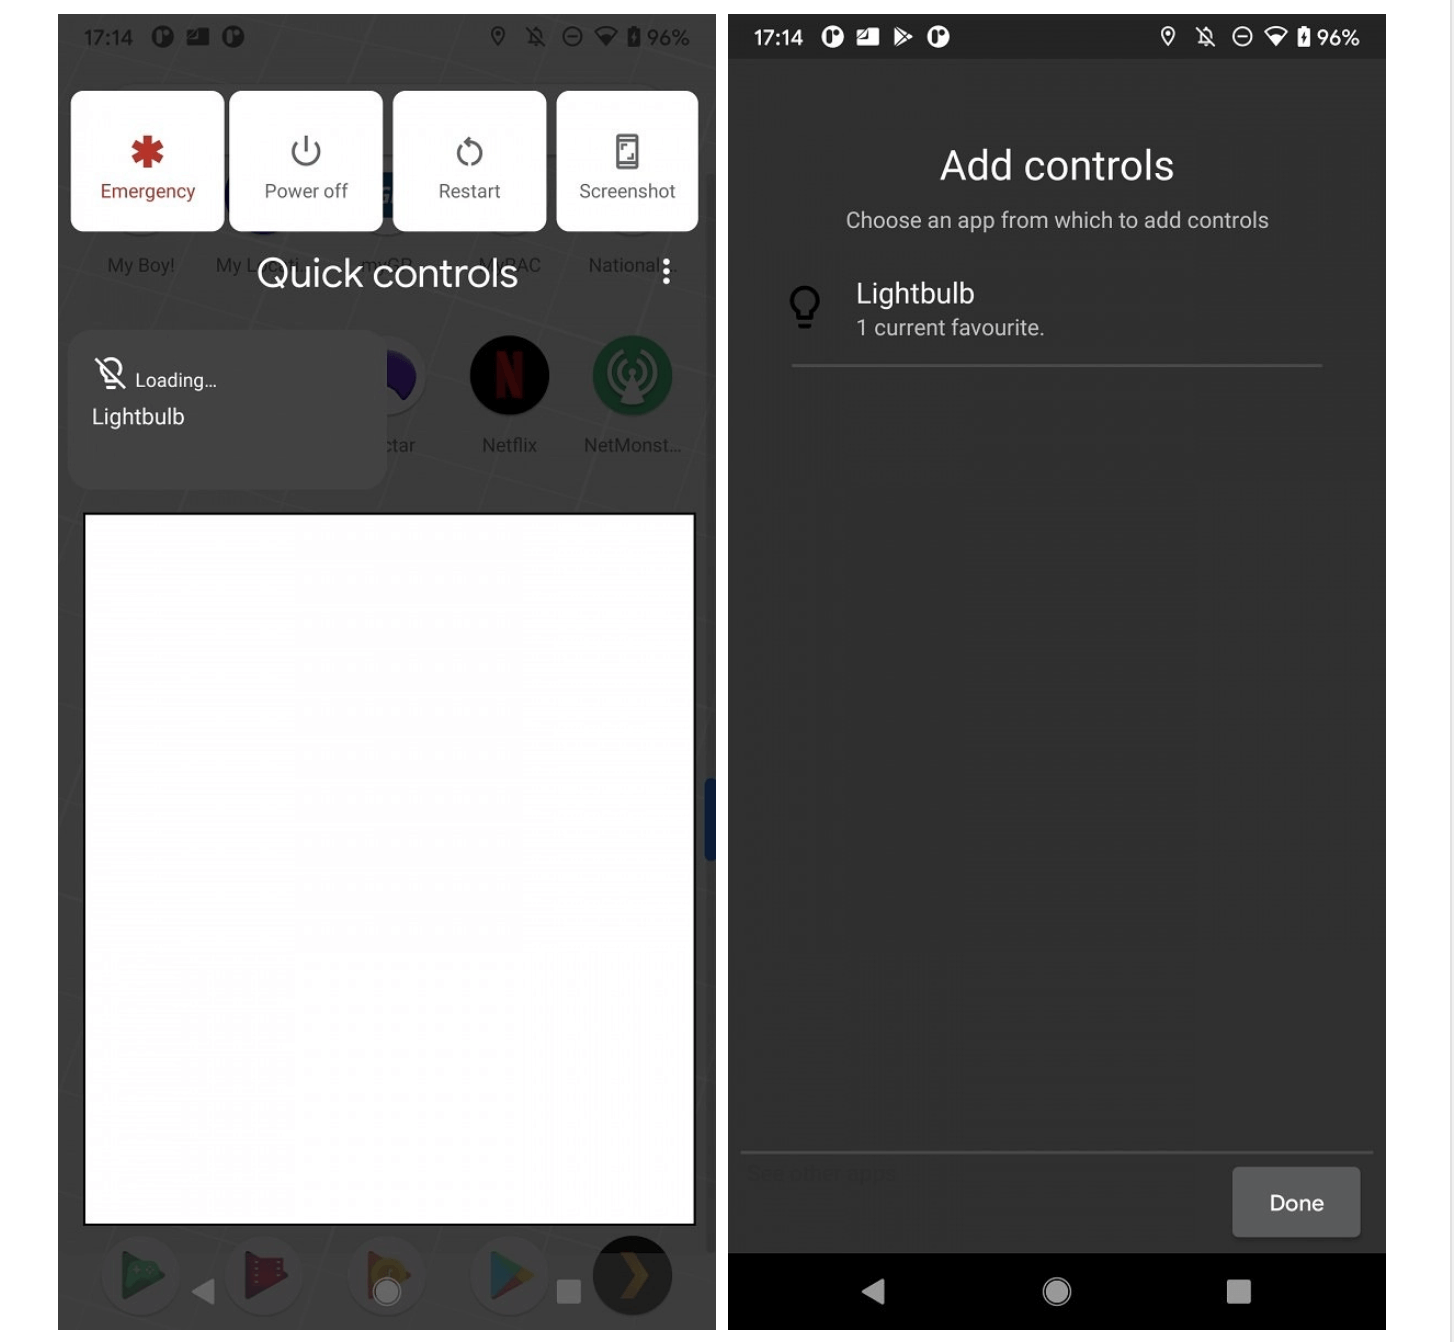 Google добавила новые функции кнопке включения в Android 11 Android, Google, можно, выключения, умного, управления, компании, только, доступ, будут, находится, Apple, своем, также, устройства, несколько, устройствами, видимо, отреагировали, функции